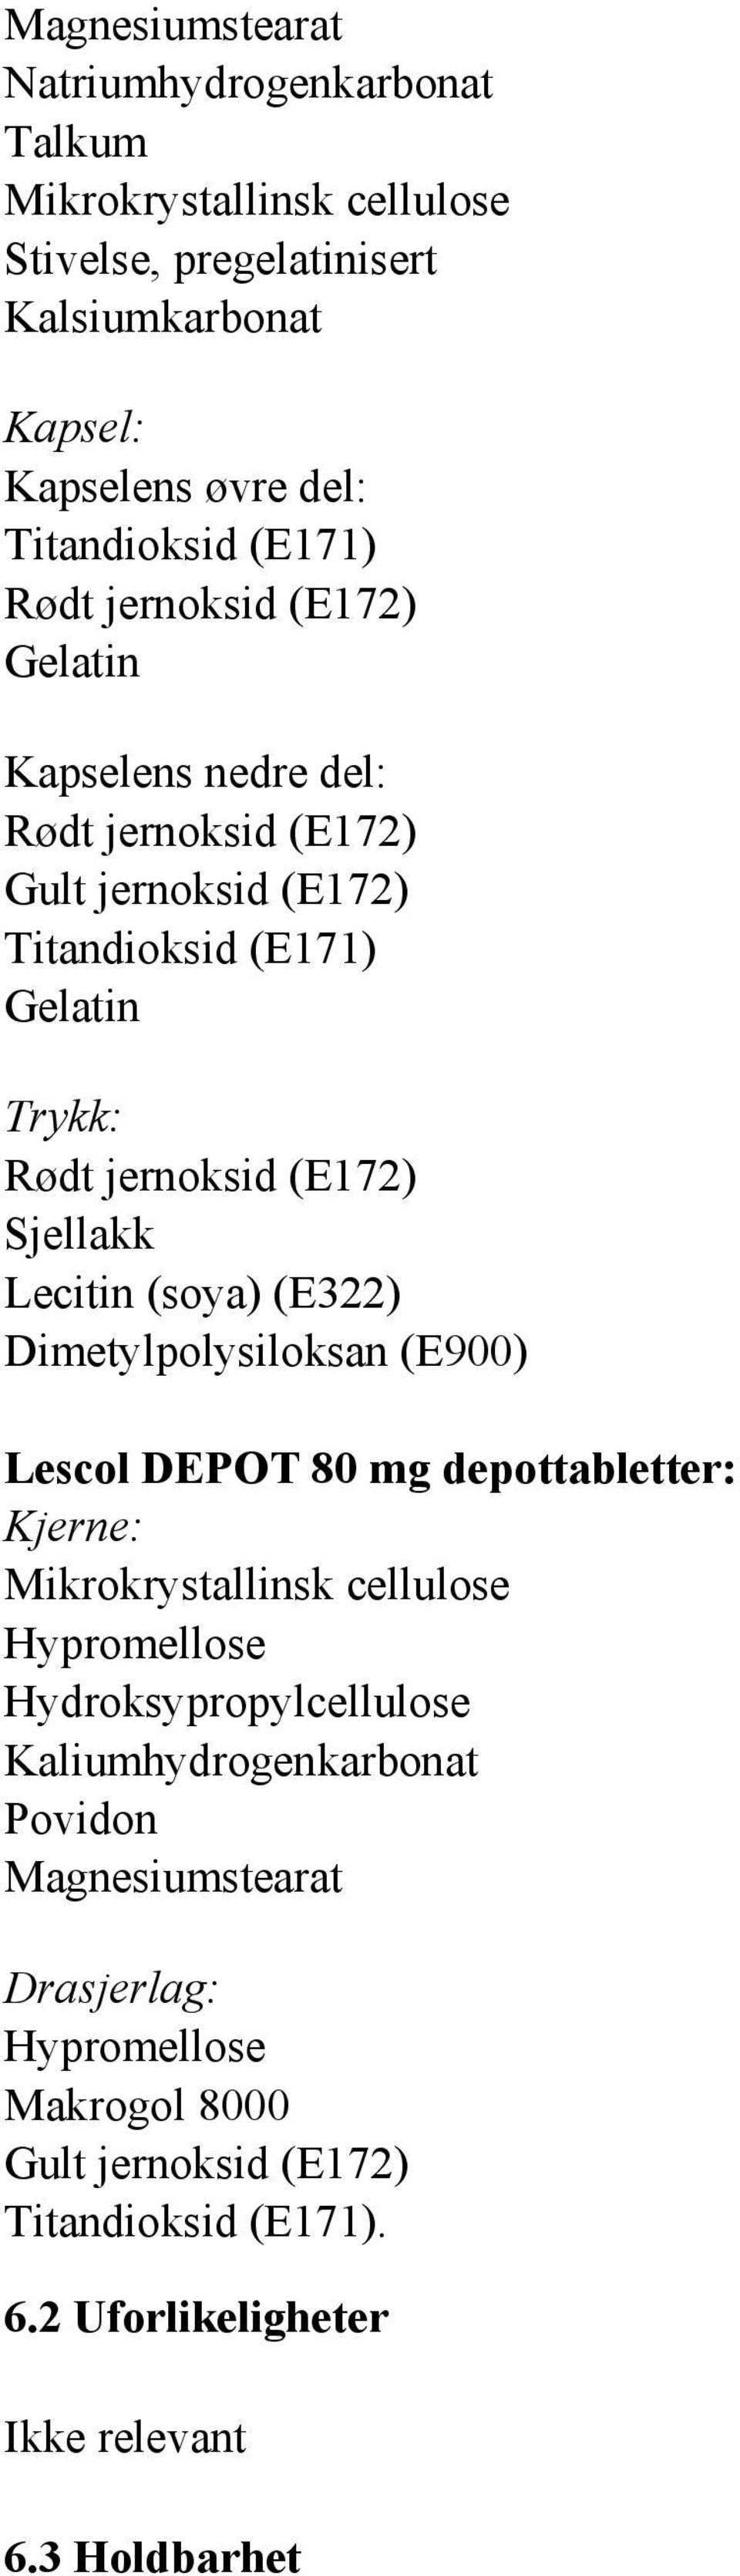 Lecitin (soya) (E322) Dimetylpolysiloksan (E900) Lescol DEPOT 80 mg depottabletter: Kjerne: Mikrokrystallinsk cellulose Hypromellose Hydroksypropylcellulose